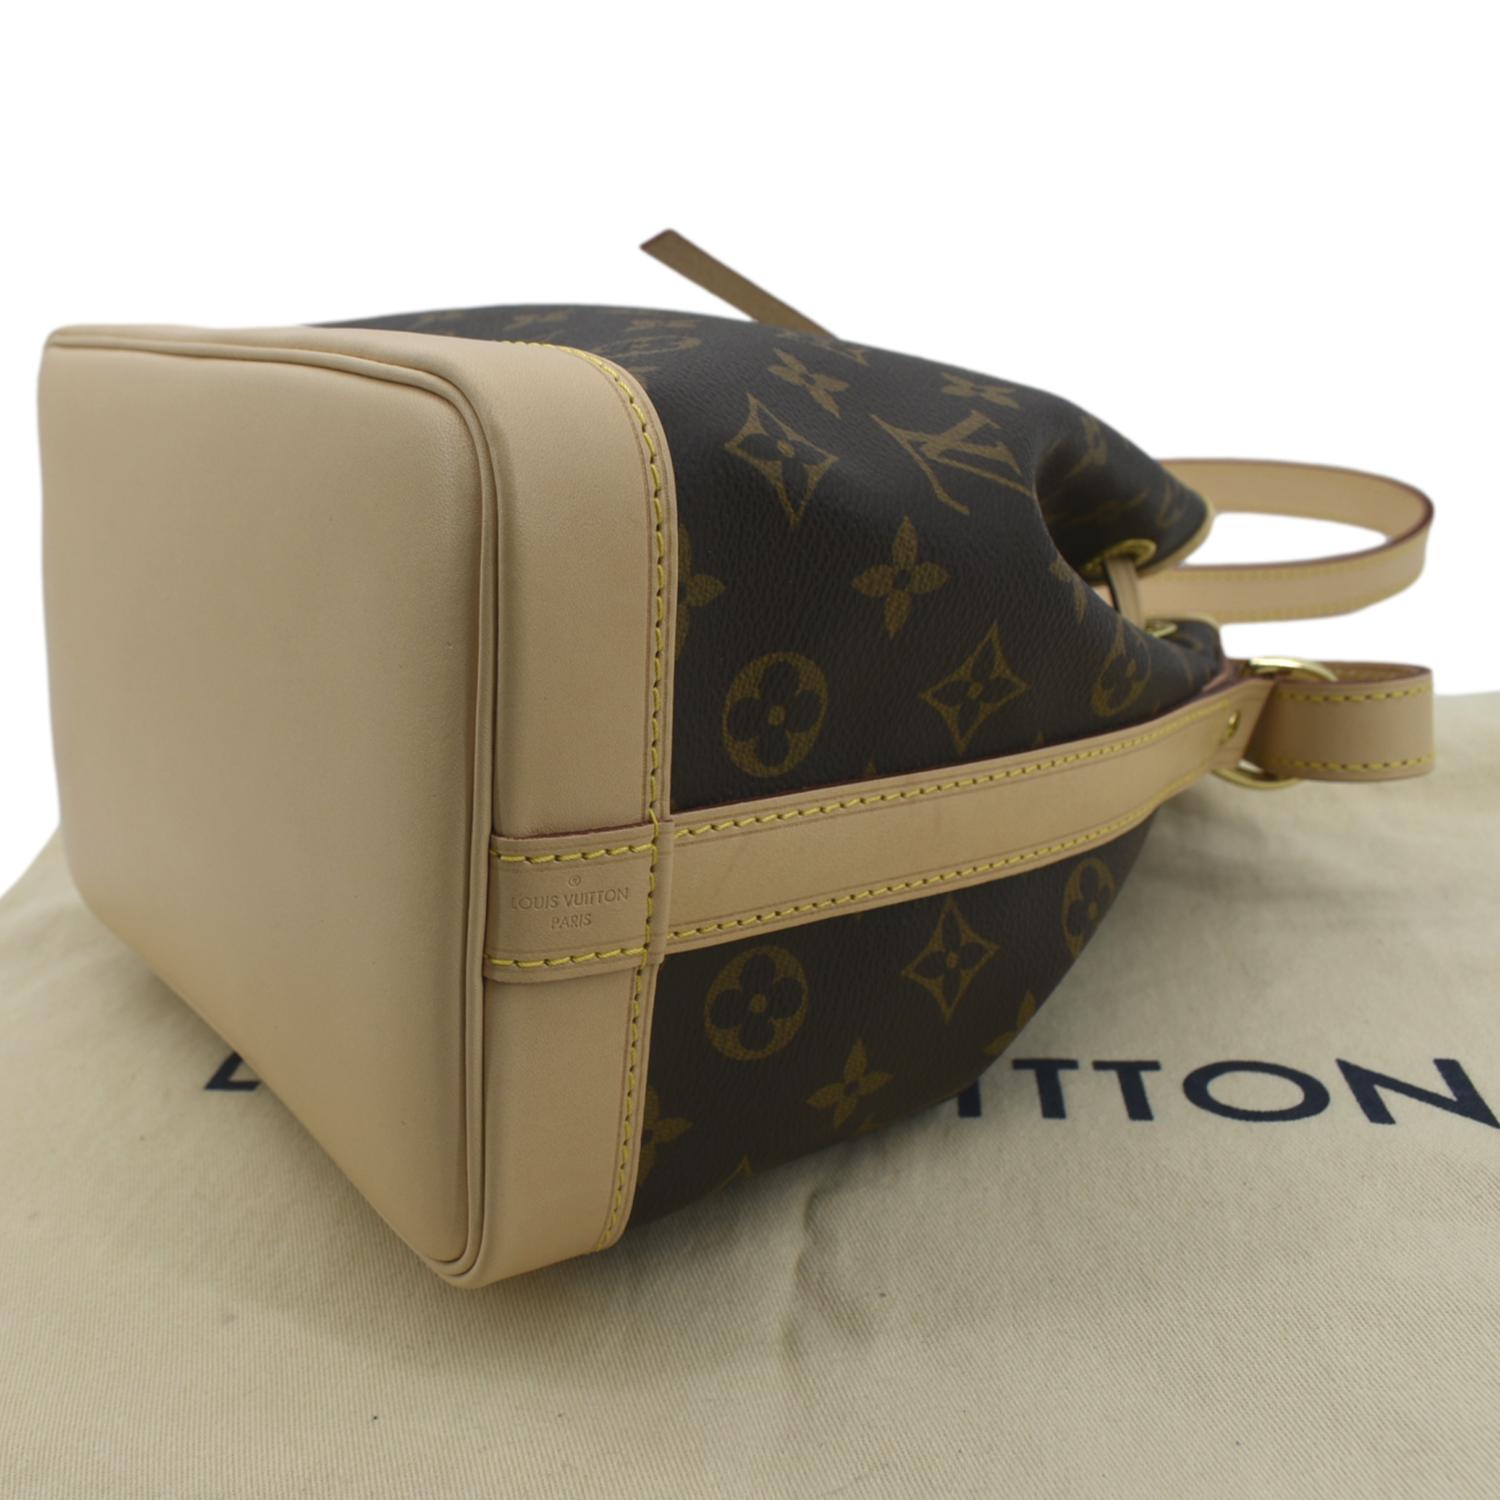 Louis Vuitton Pre-loved Monogram Noe Bb Bag in Brown